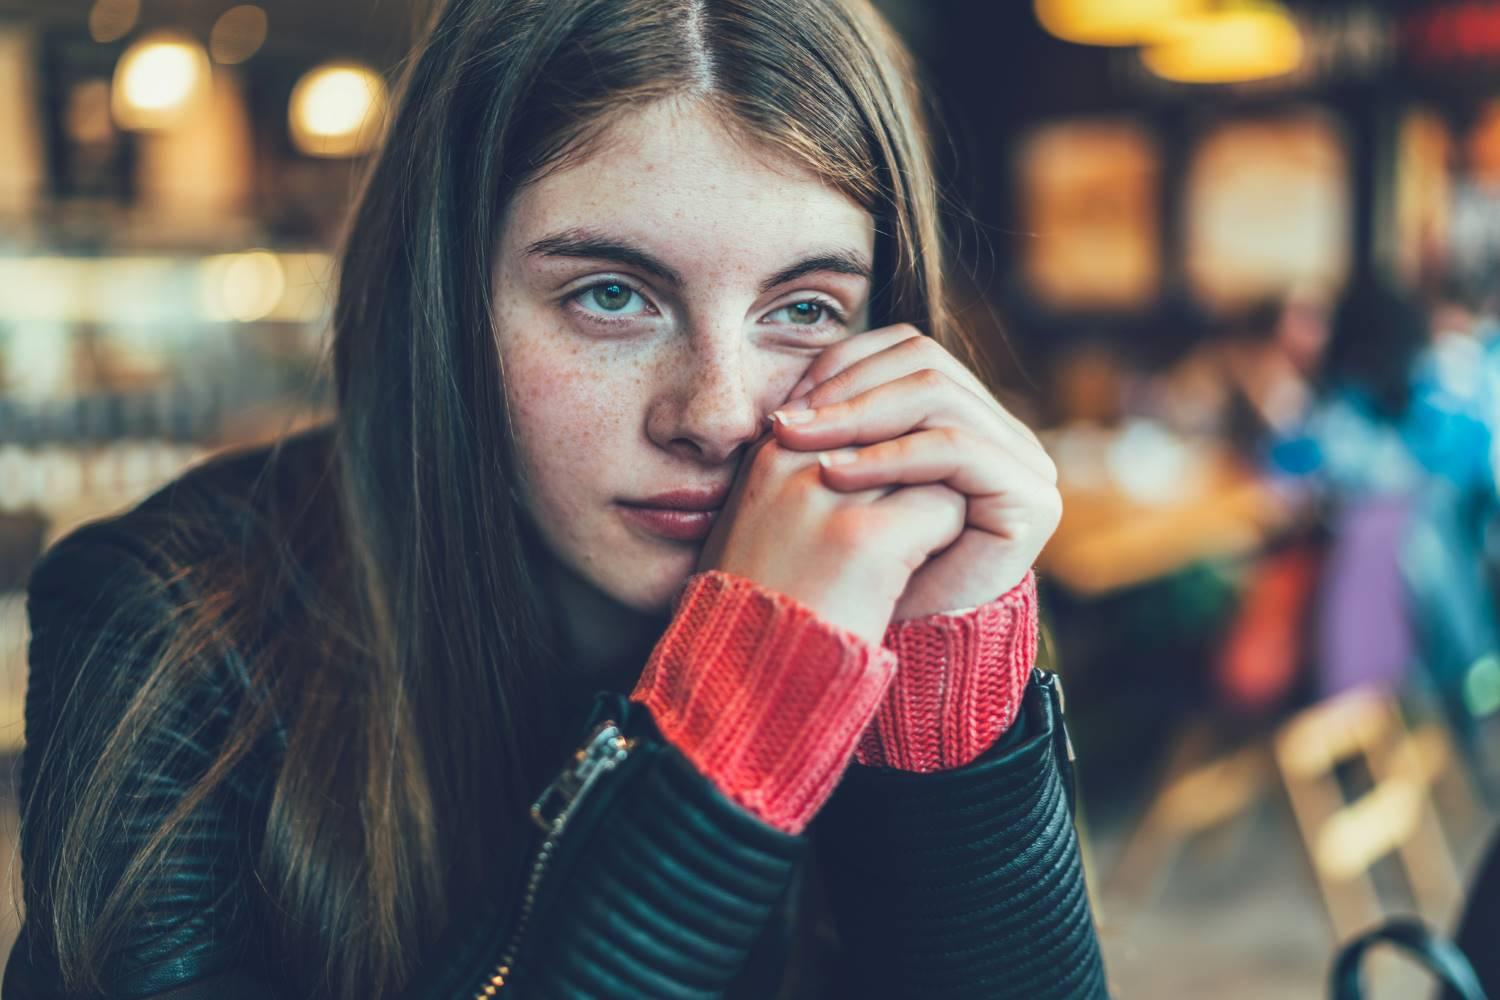 Mädchen im Teenager-Alter sitzt in einem Café und schaut verträumt in den Raum.